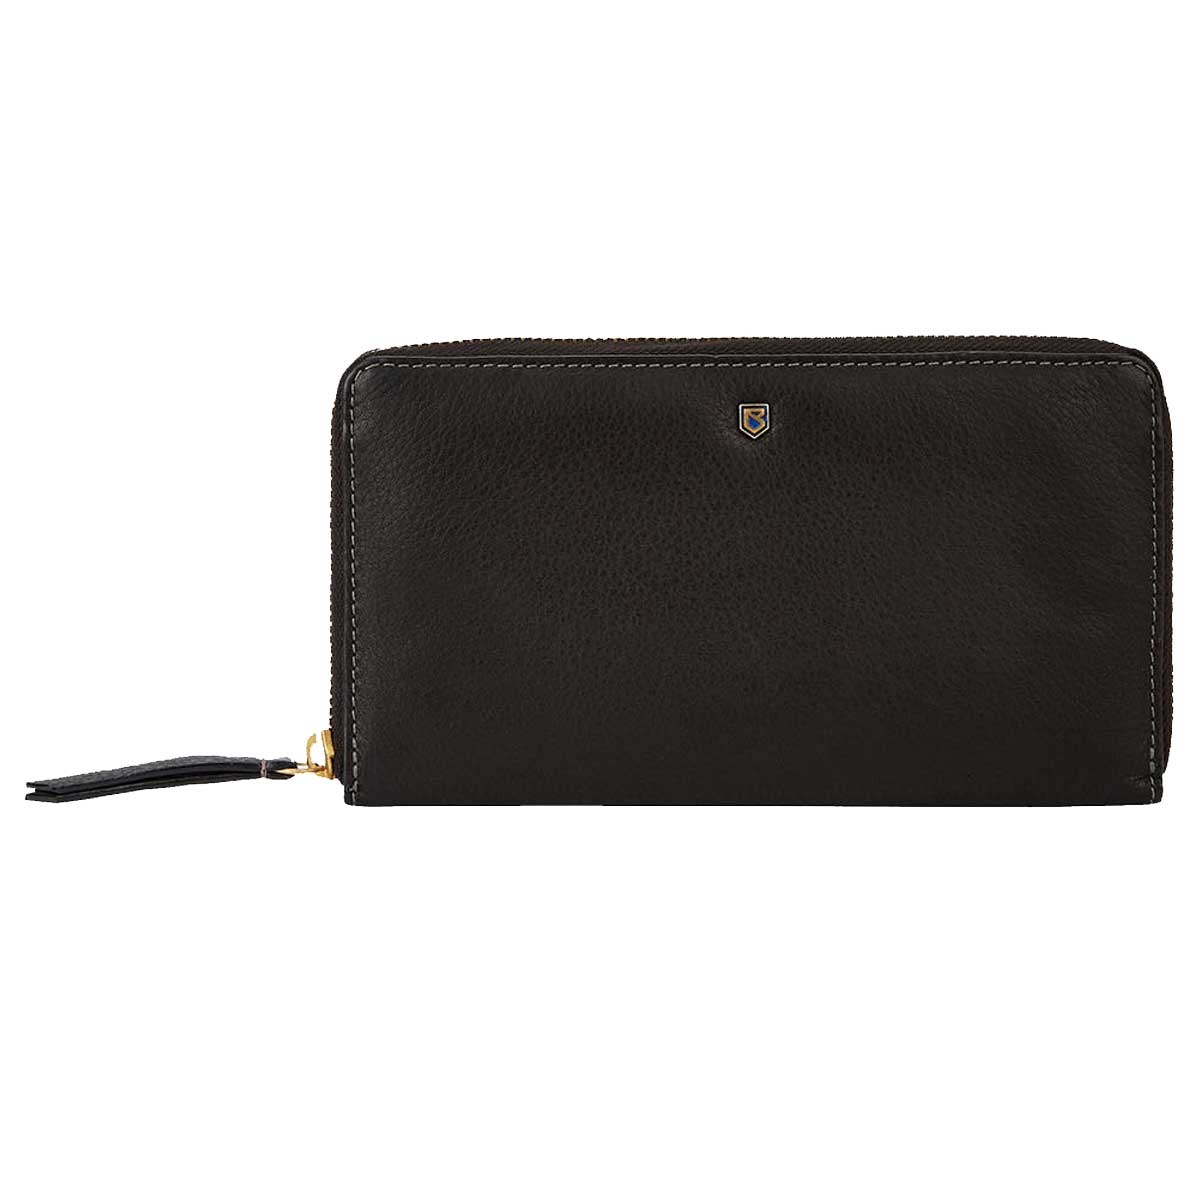 DUBARRY Portlick Women's Leather Wallet - Black